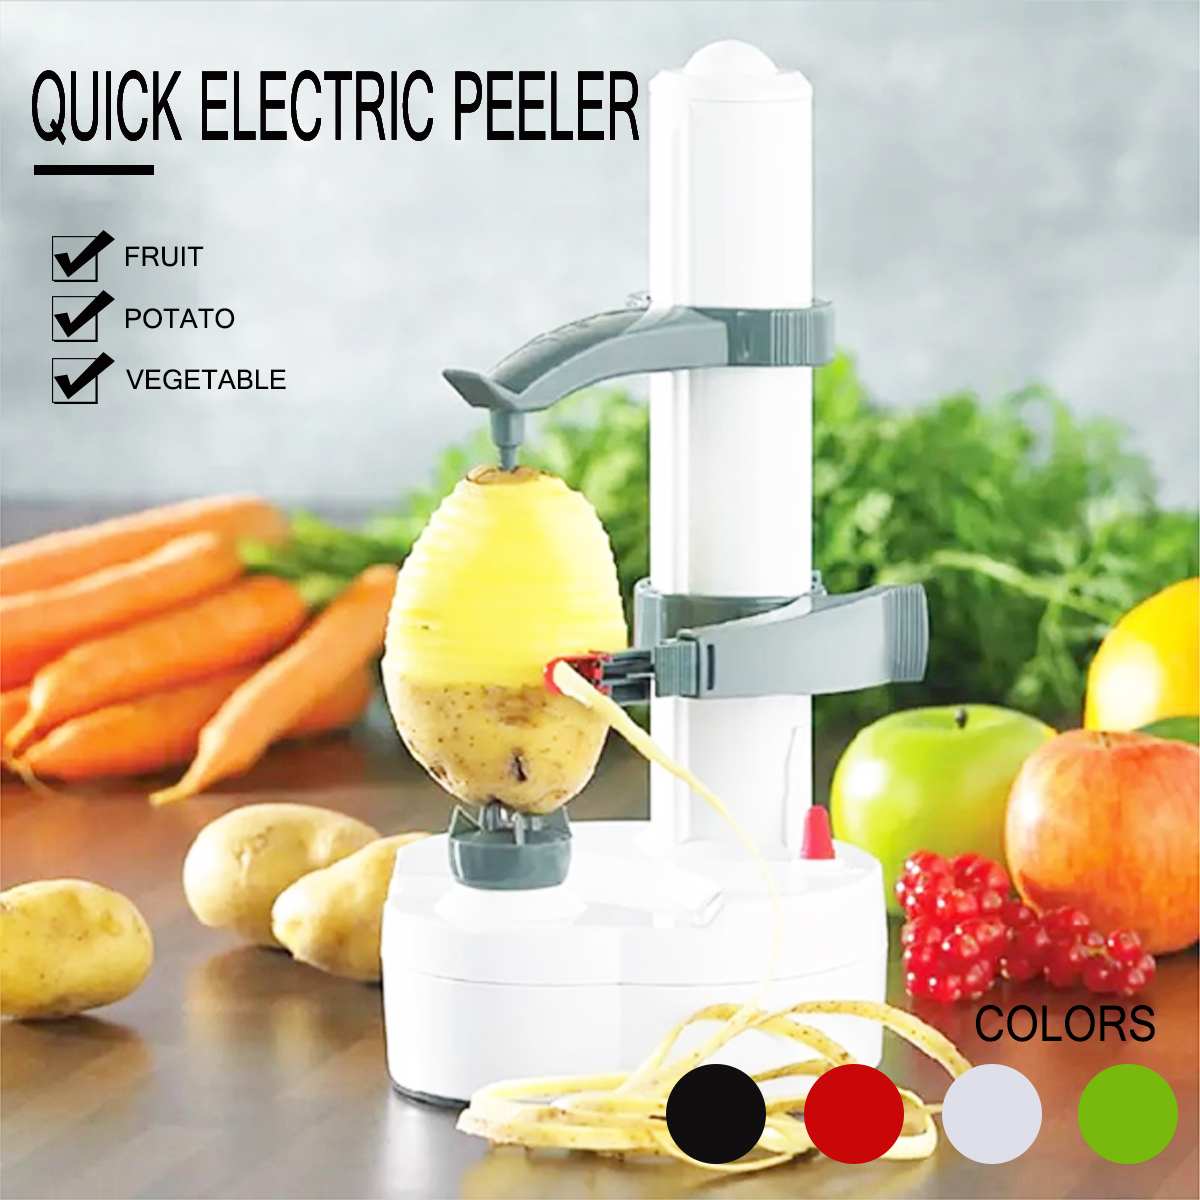 Multifunctionele Elektrische Dunschiller Groenten Fruit Apple Dunschiller Rvs Peeling Machine Keuken Tool Met 3 Bladen